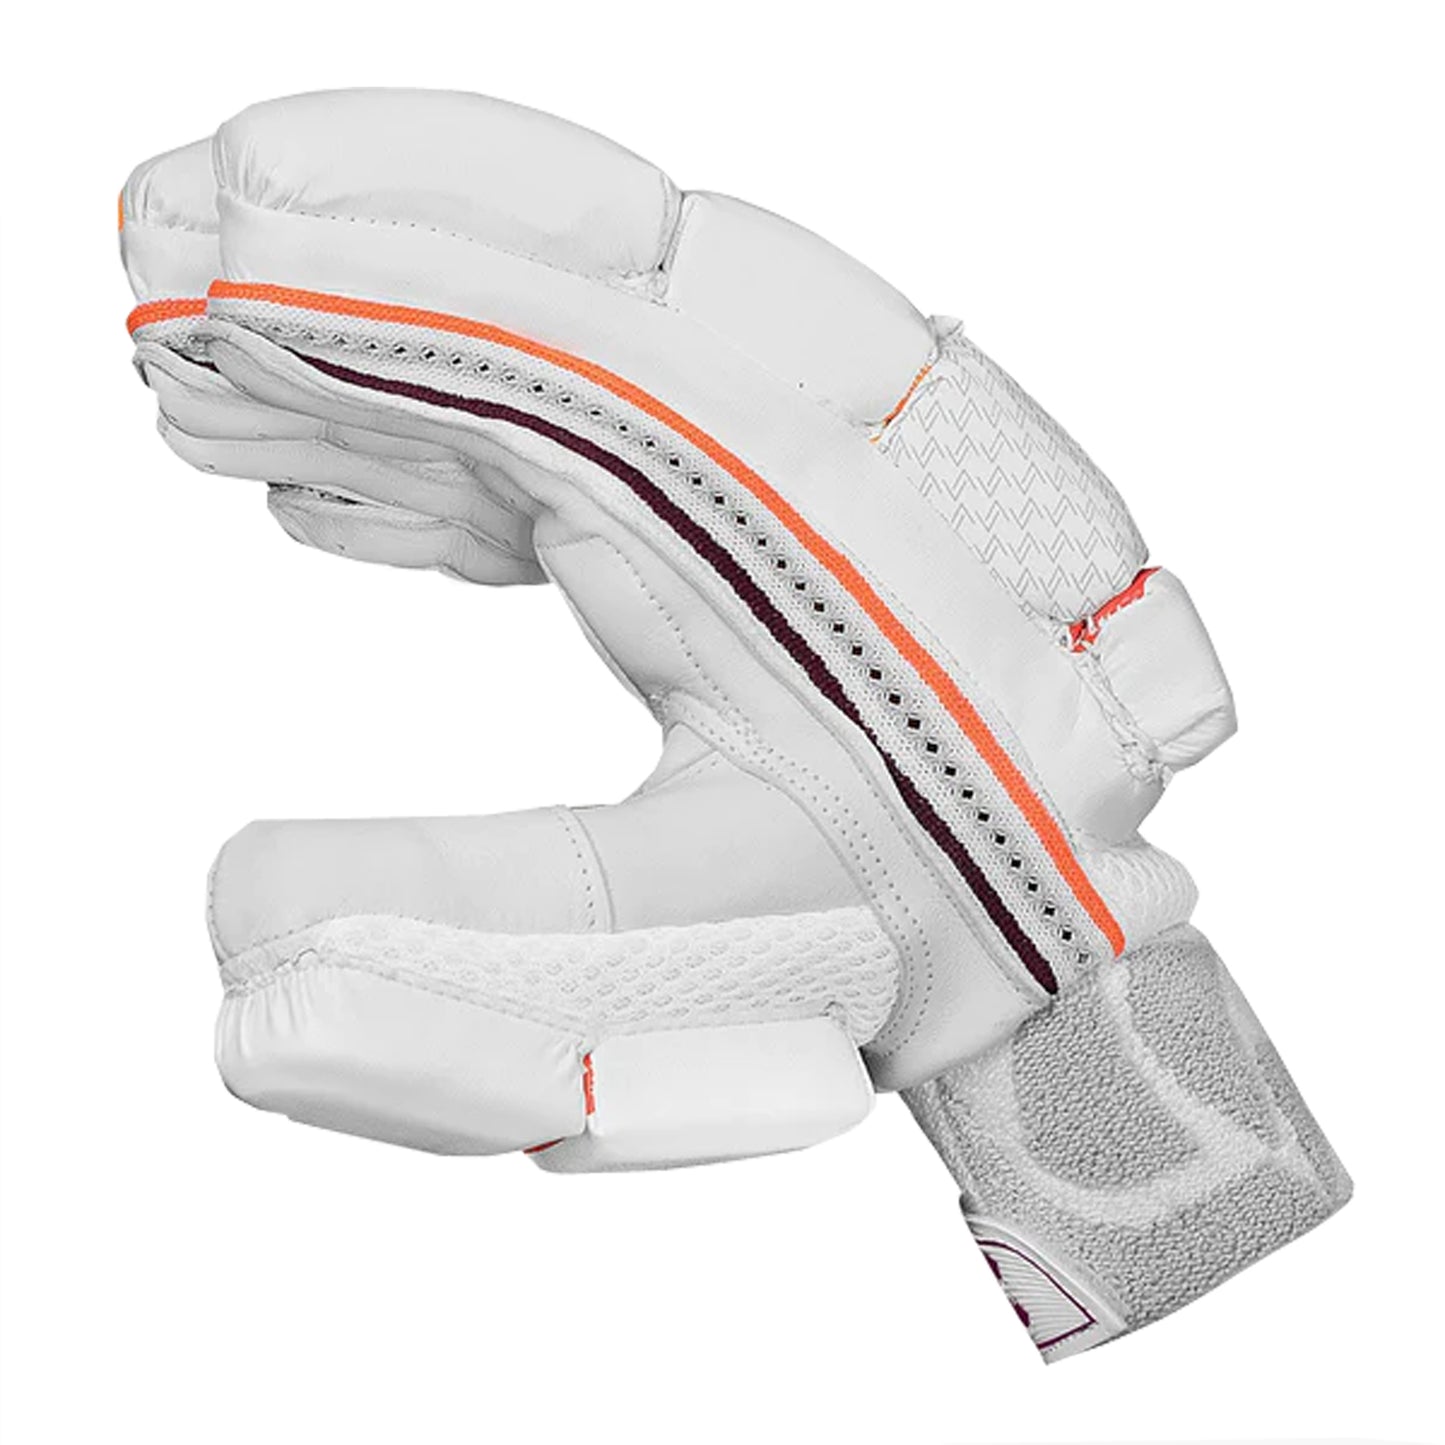 DSC Intense Shoc RH Batting Gloves , White/Red/Orange - Best Price online Prokicksports.com